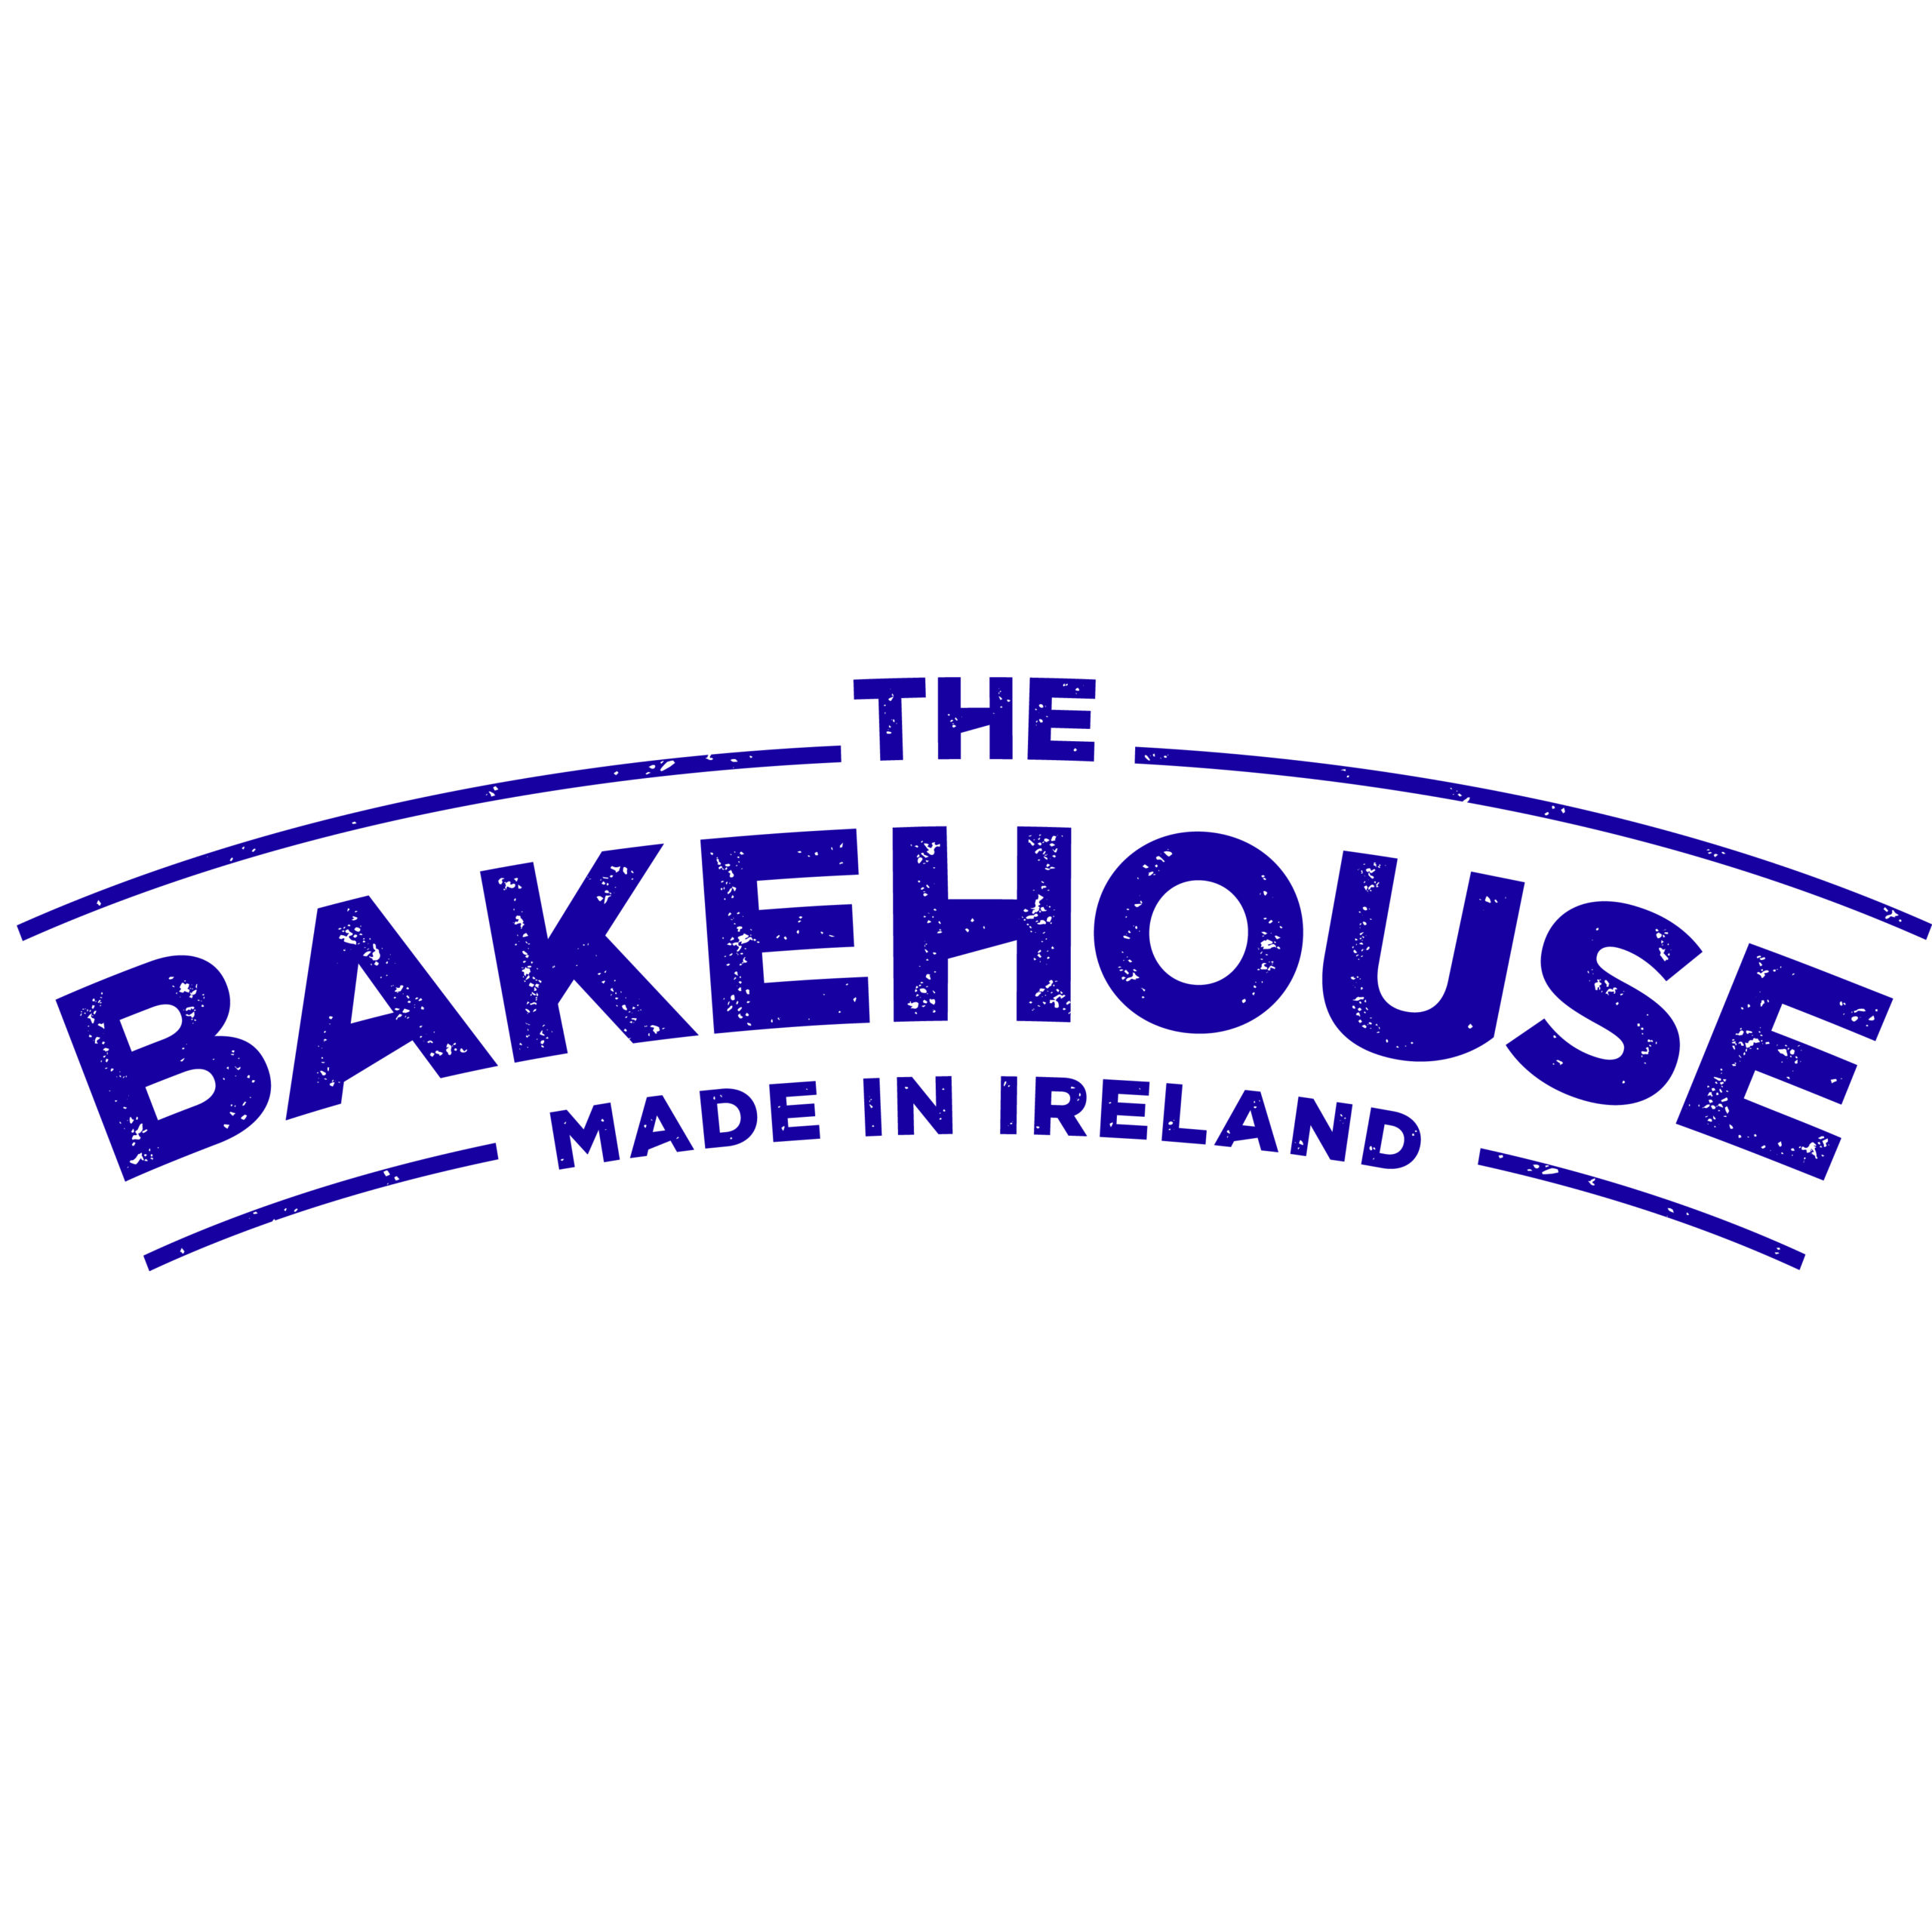 East Coast Bakehouse